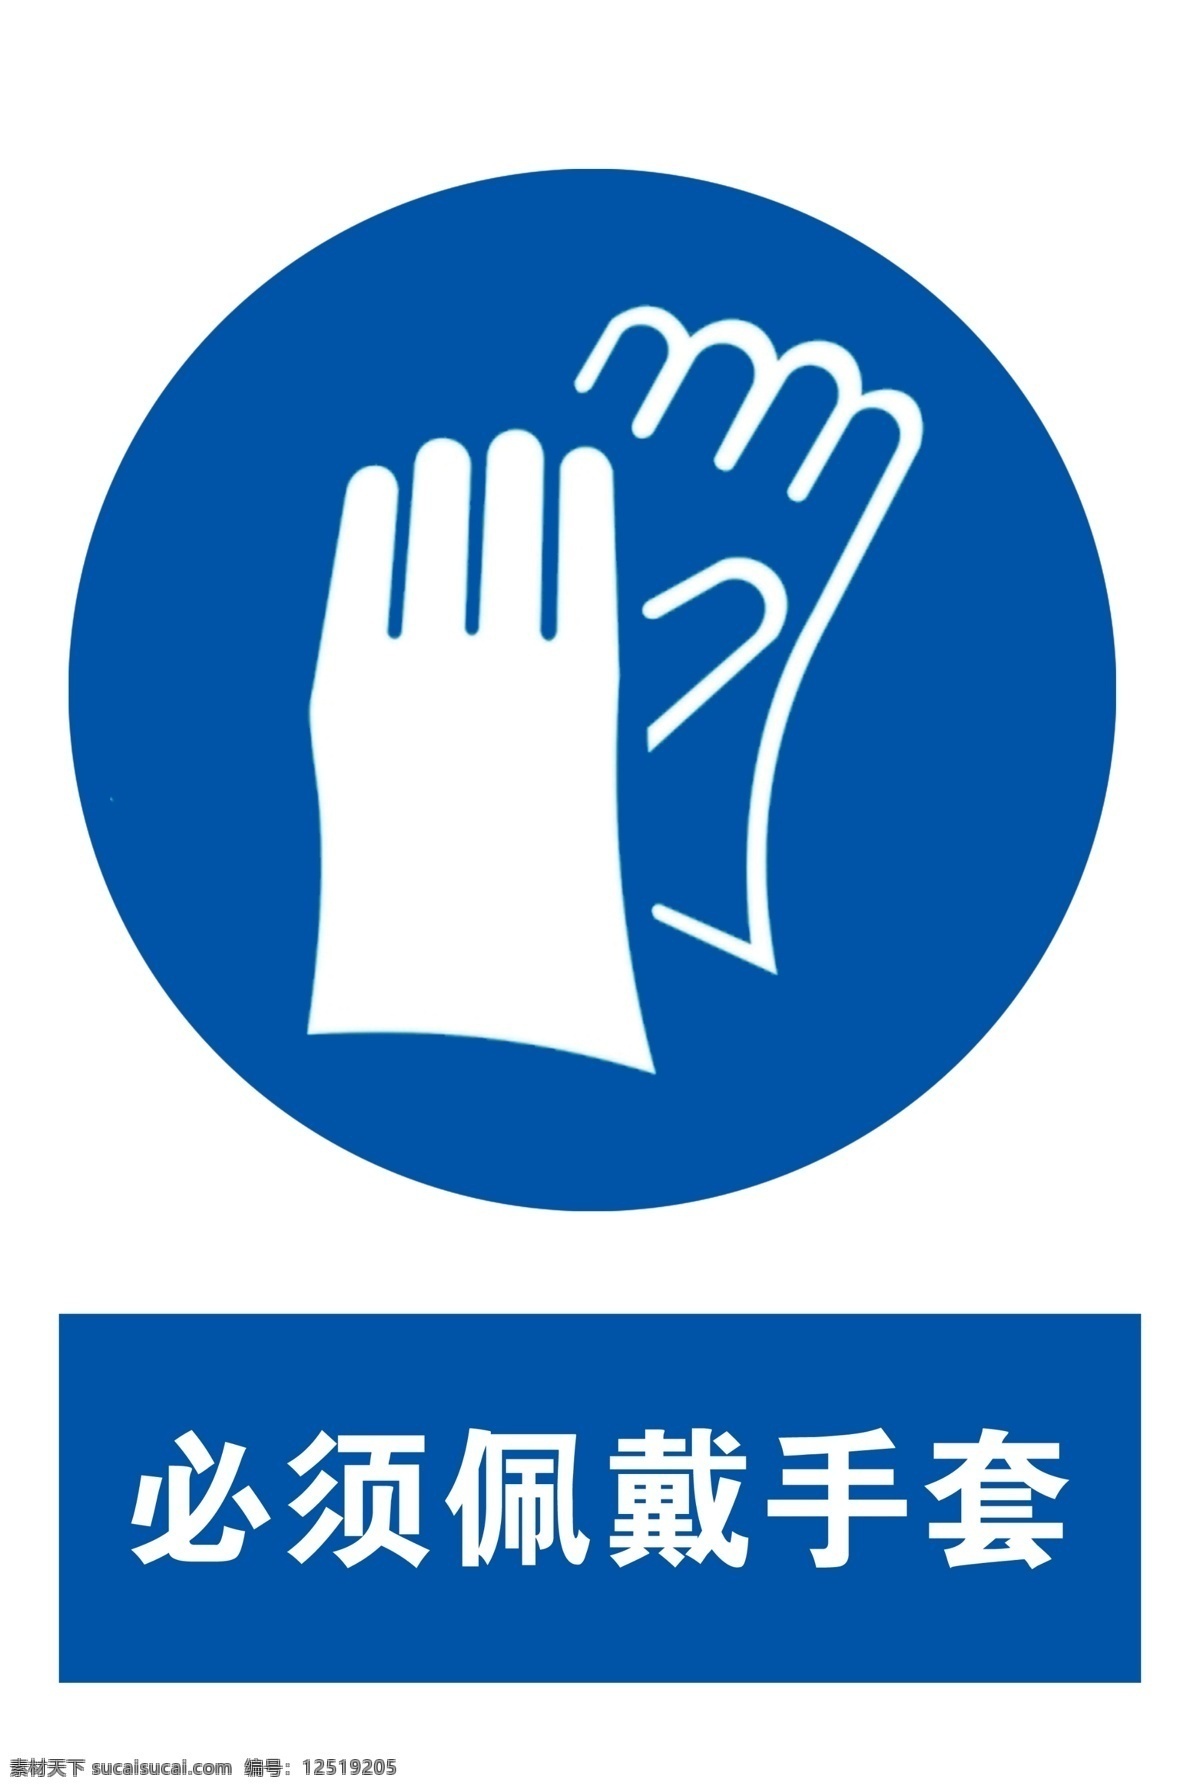 佩戴手套图片 佩戴手套 必须佩戴手套 标志 安全 标识 标志图标 公共标识标志